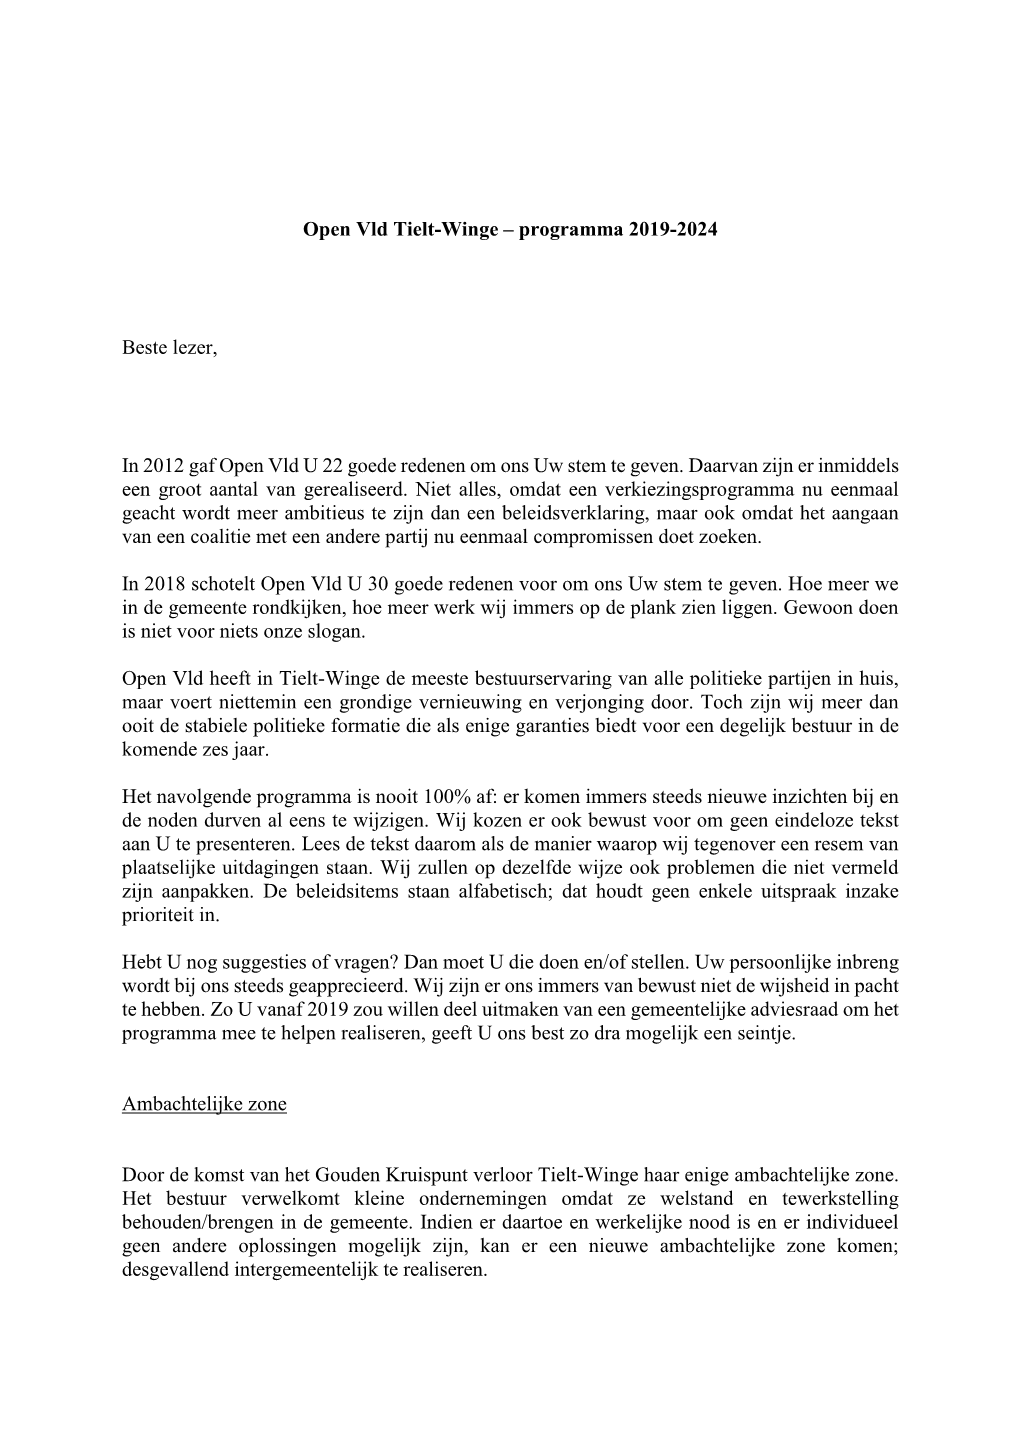 Programma 2019-2024 Beste Lezer, in 2012 Gaf